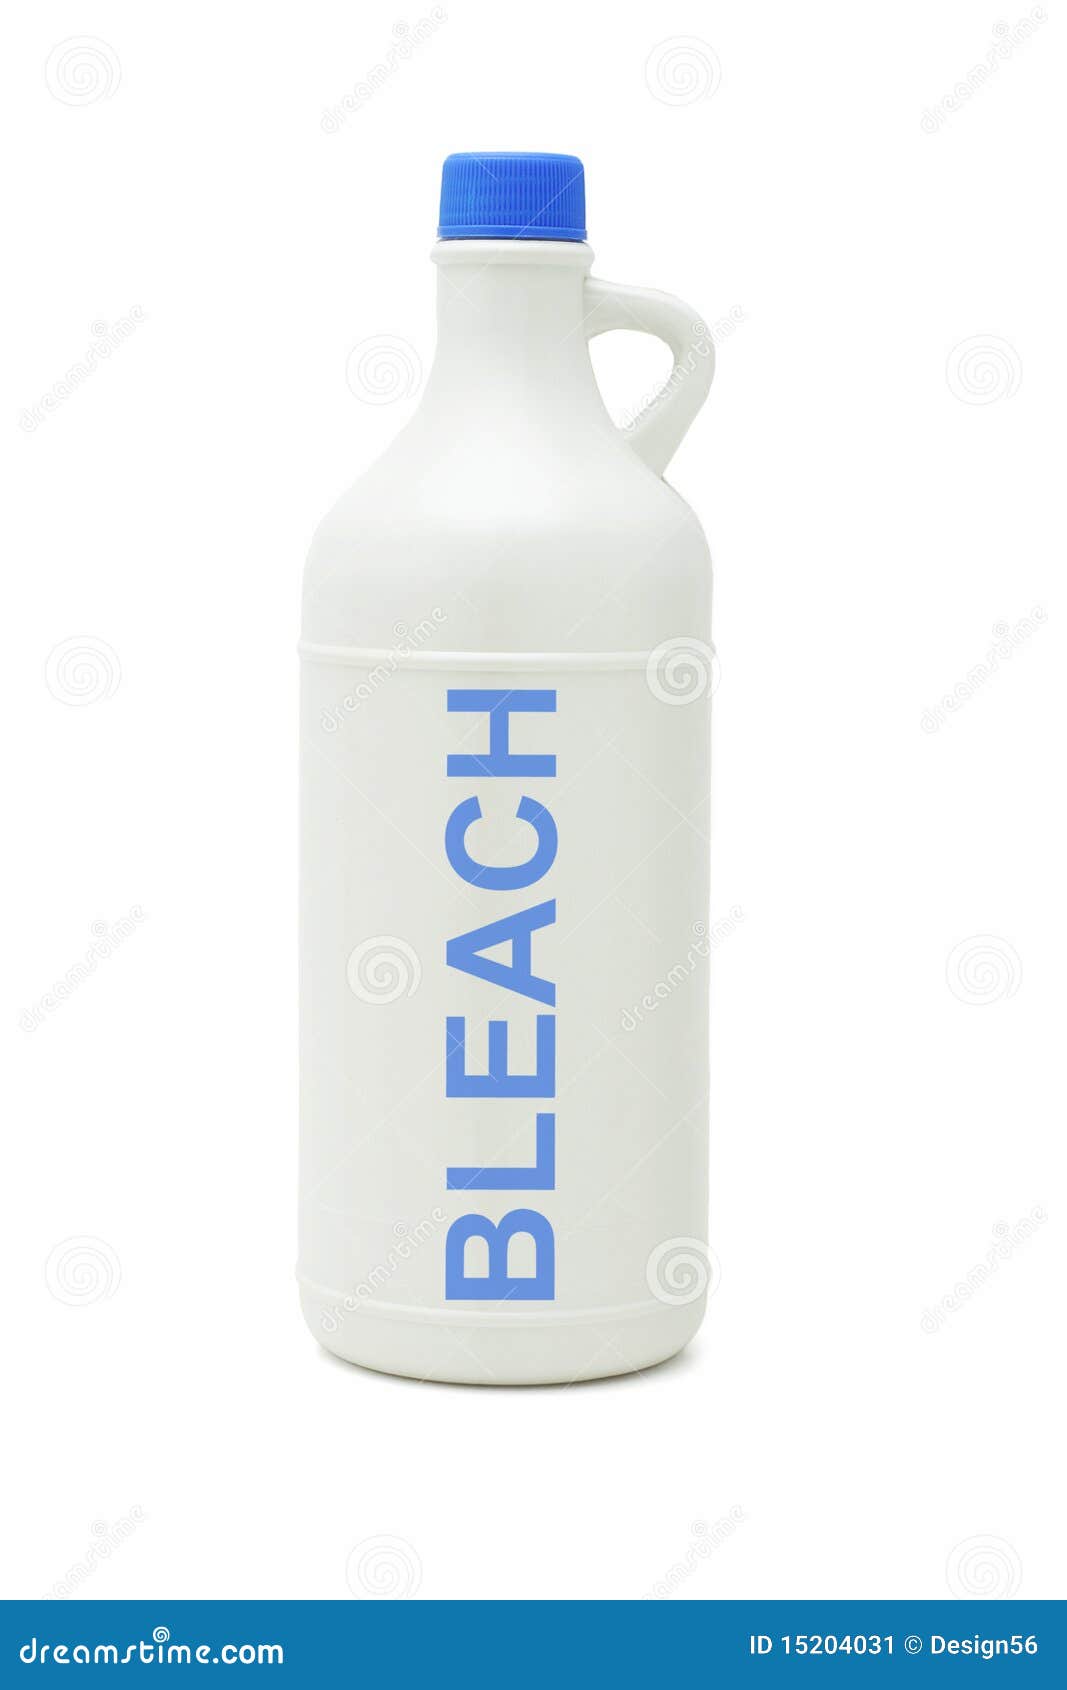 bottle of household bleach